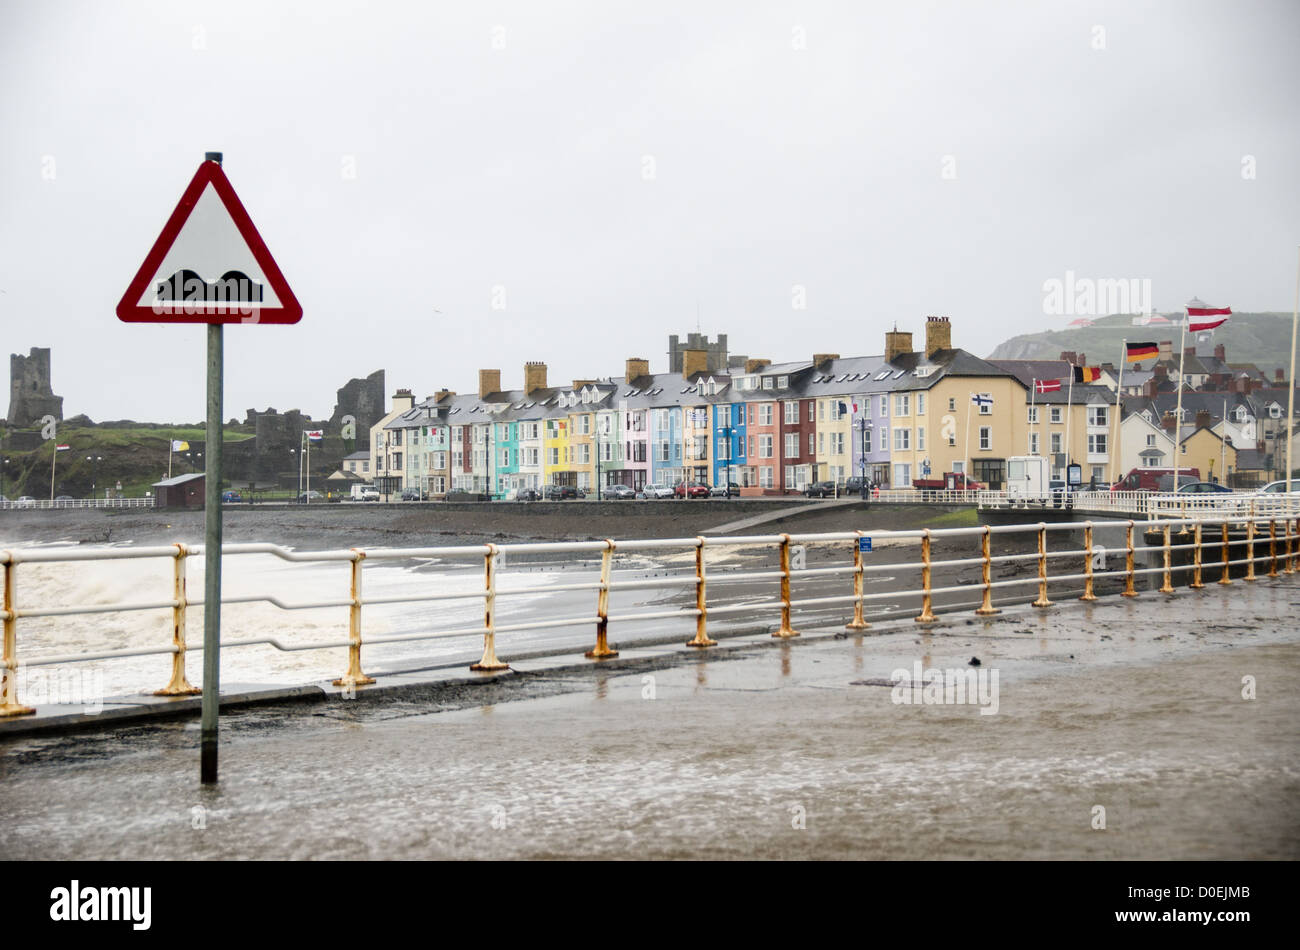 ABERYSTWYTH, Wales - einem windigen und nassen Sturm peitschen die bunten Häuser am Wasser in Aberystwyth an der Westküste von Wales. Meer Wasser Runden über dem Meer an der Wand, das Überschwemmen der Parkplatz im Vordergrund. Stockfoto